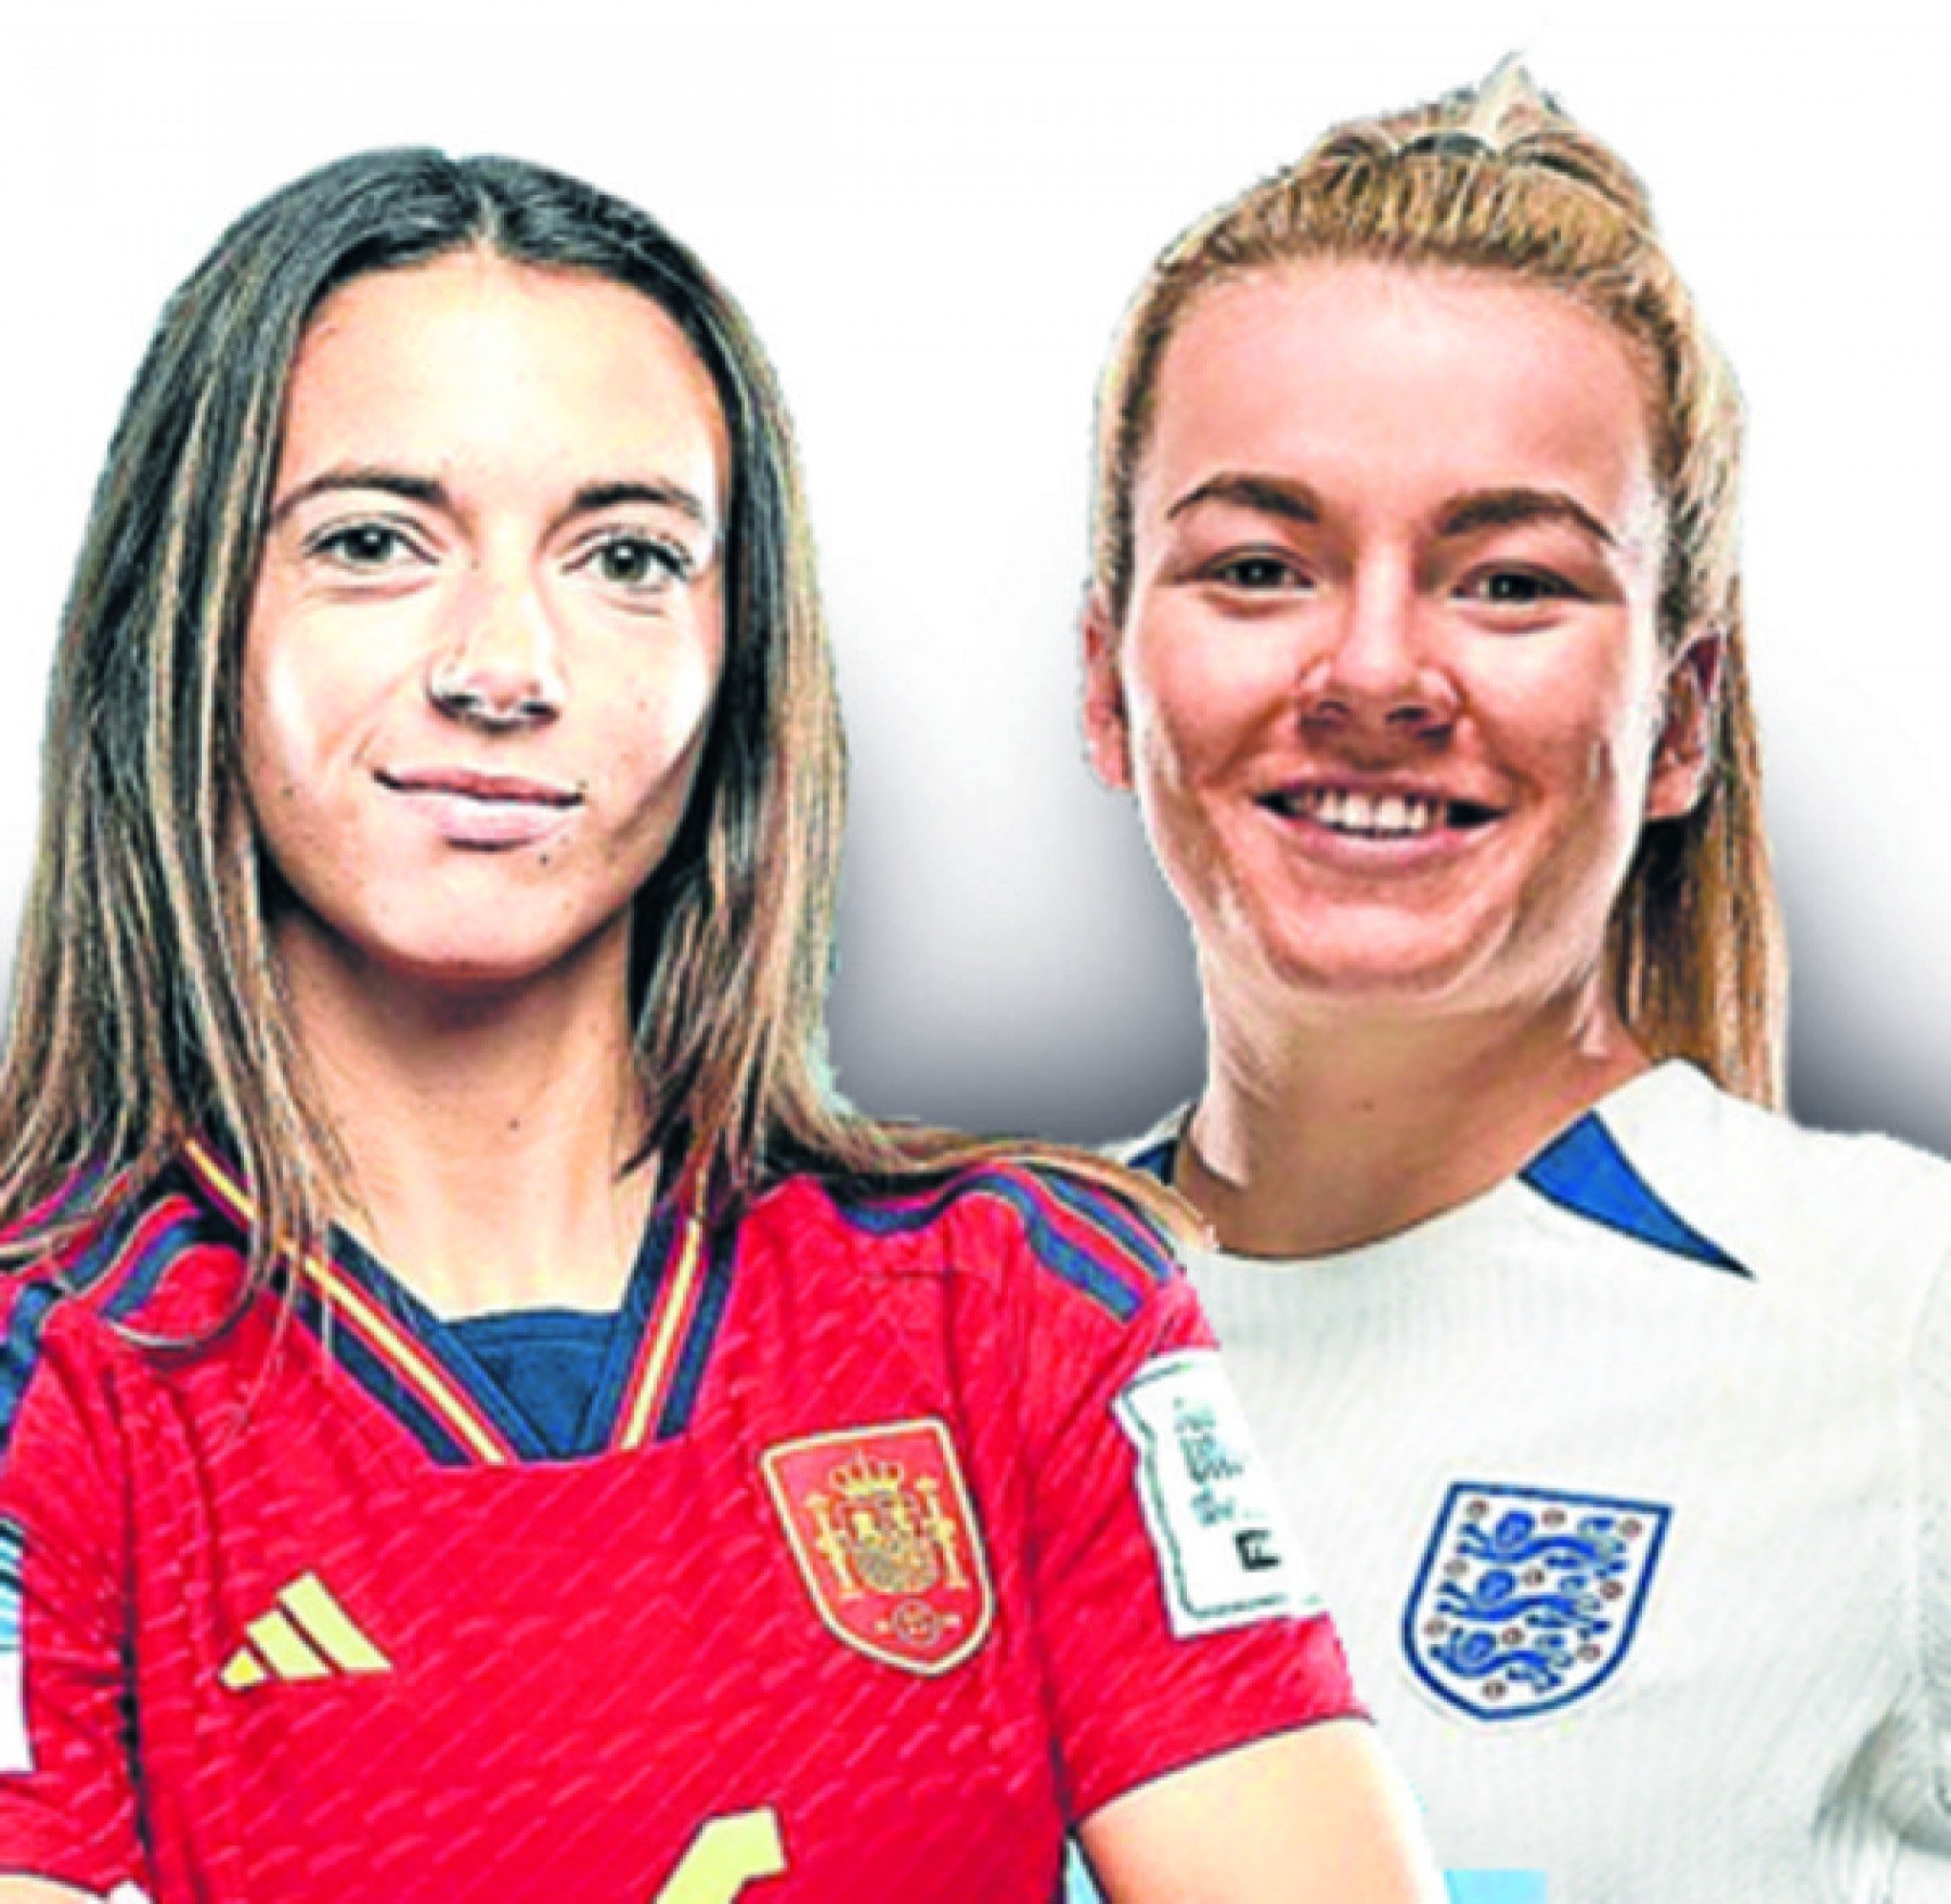 Copa do Mundo Feminina terá final inédita entre Espanha e